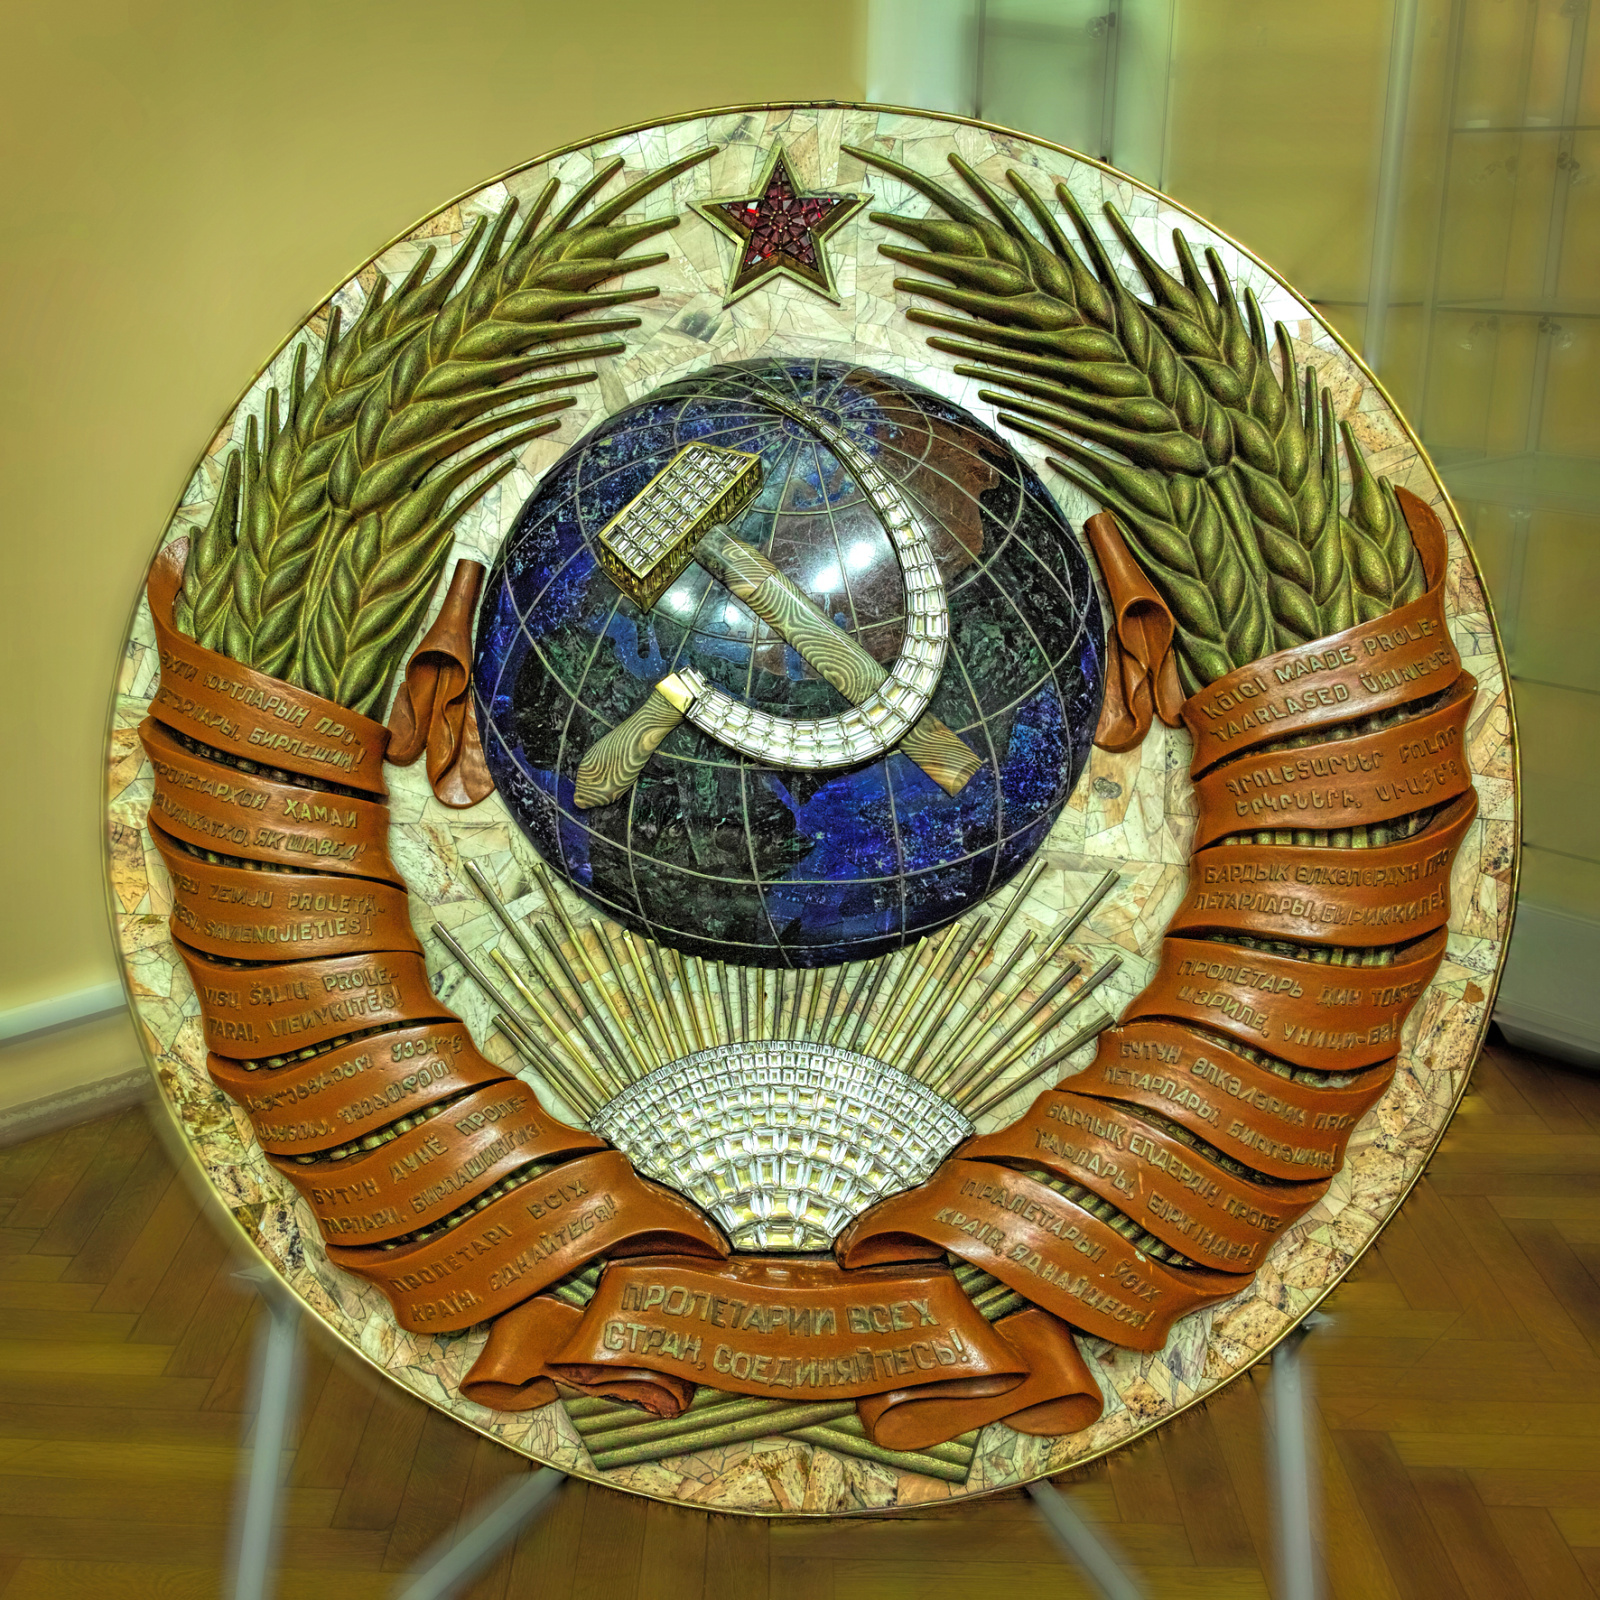 Герб Союза ССР, который венчал мозаичное панно, создан в стилистике самой карты. Фото: ЦНИГР музей